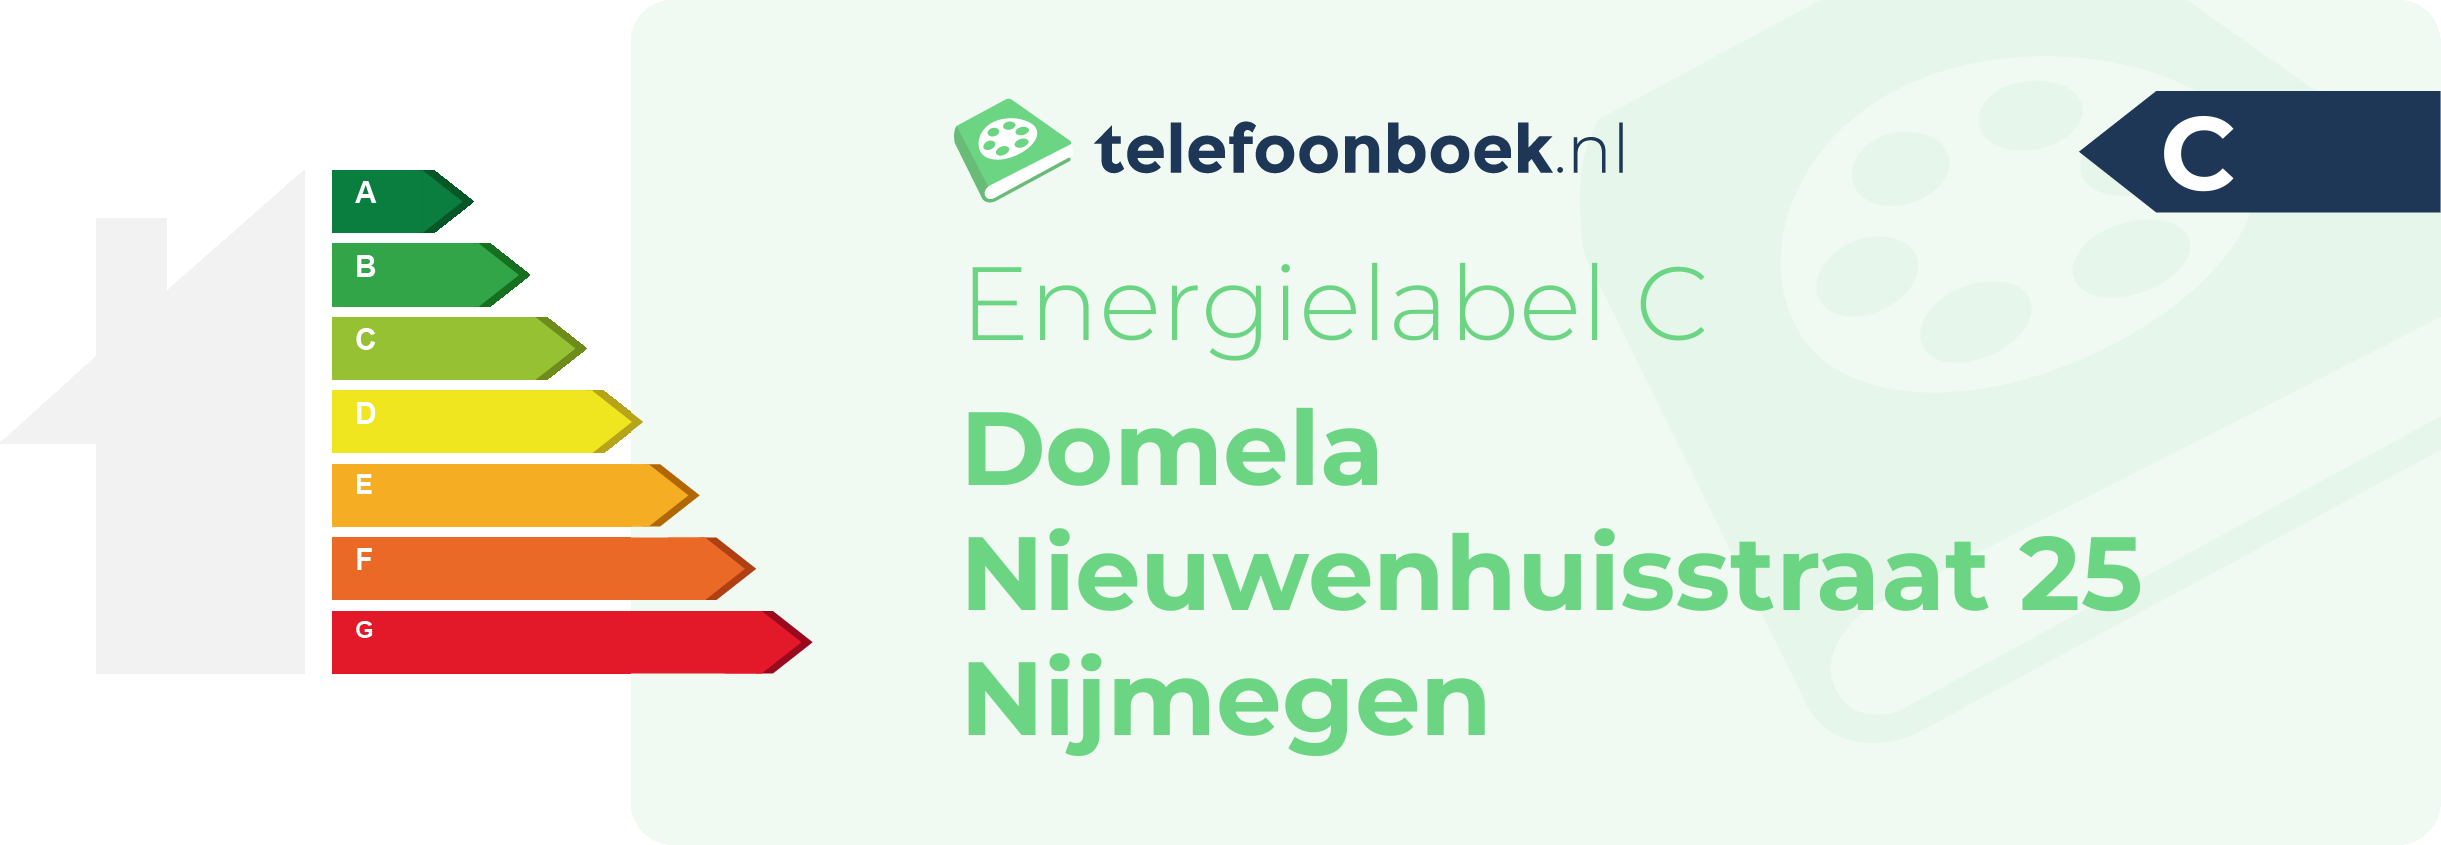 Energielabel Domela Nieuwenhuisstraat 25 Nijmegen